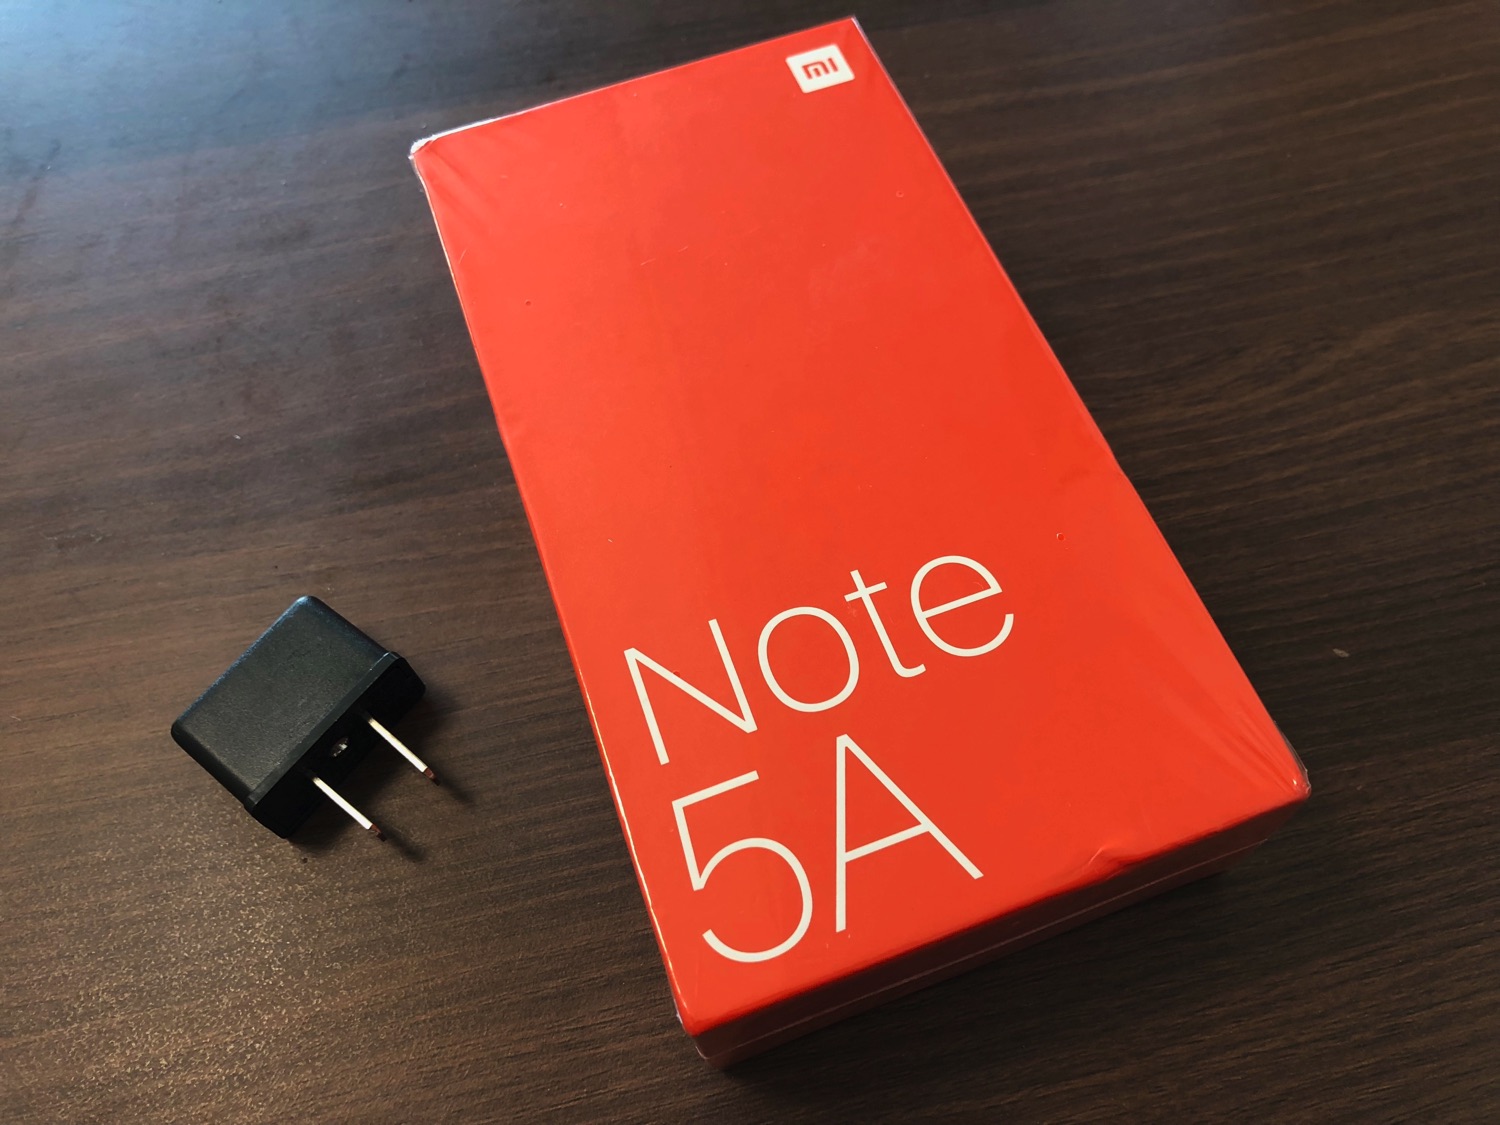 Redmi Note 5A